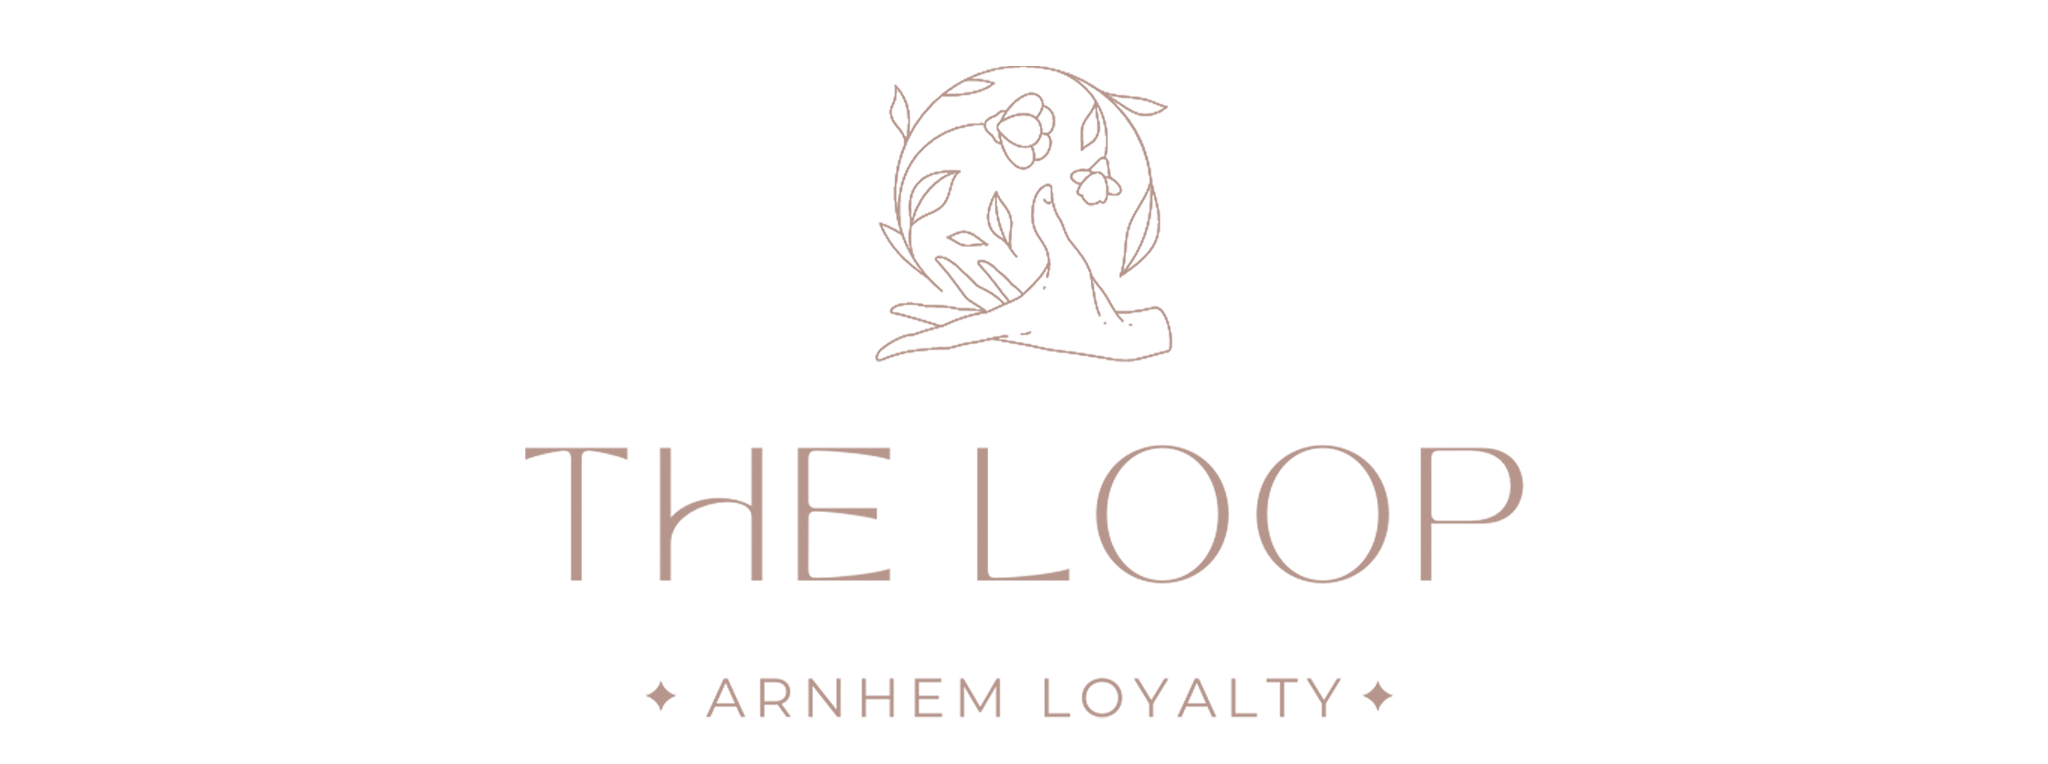 The Loop Loyalty